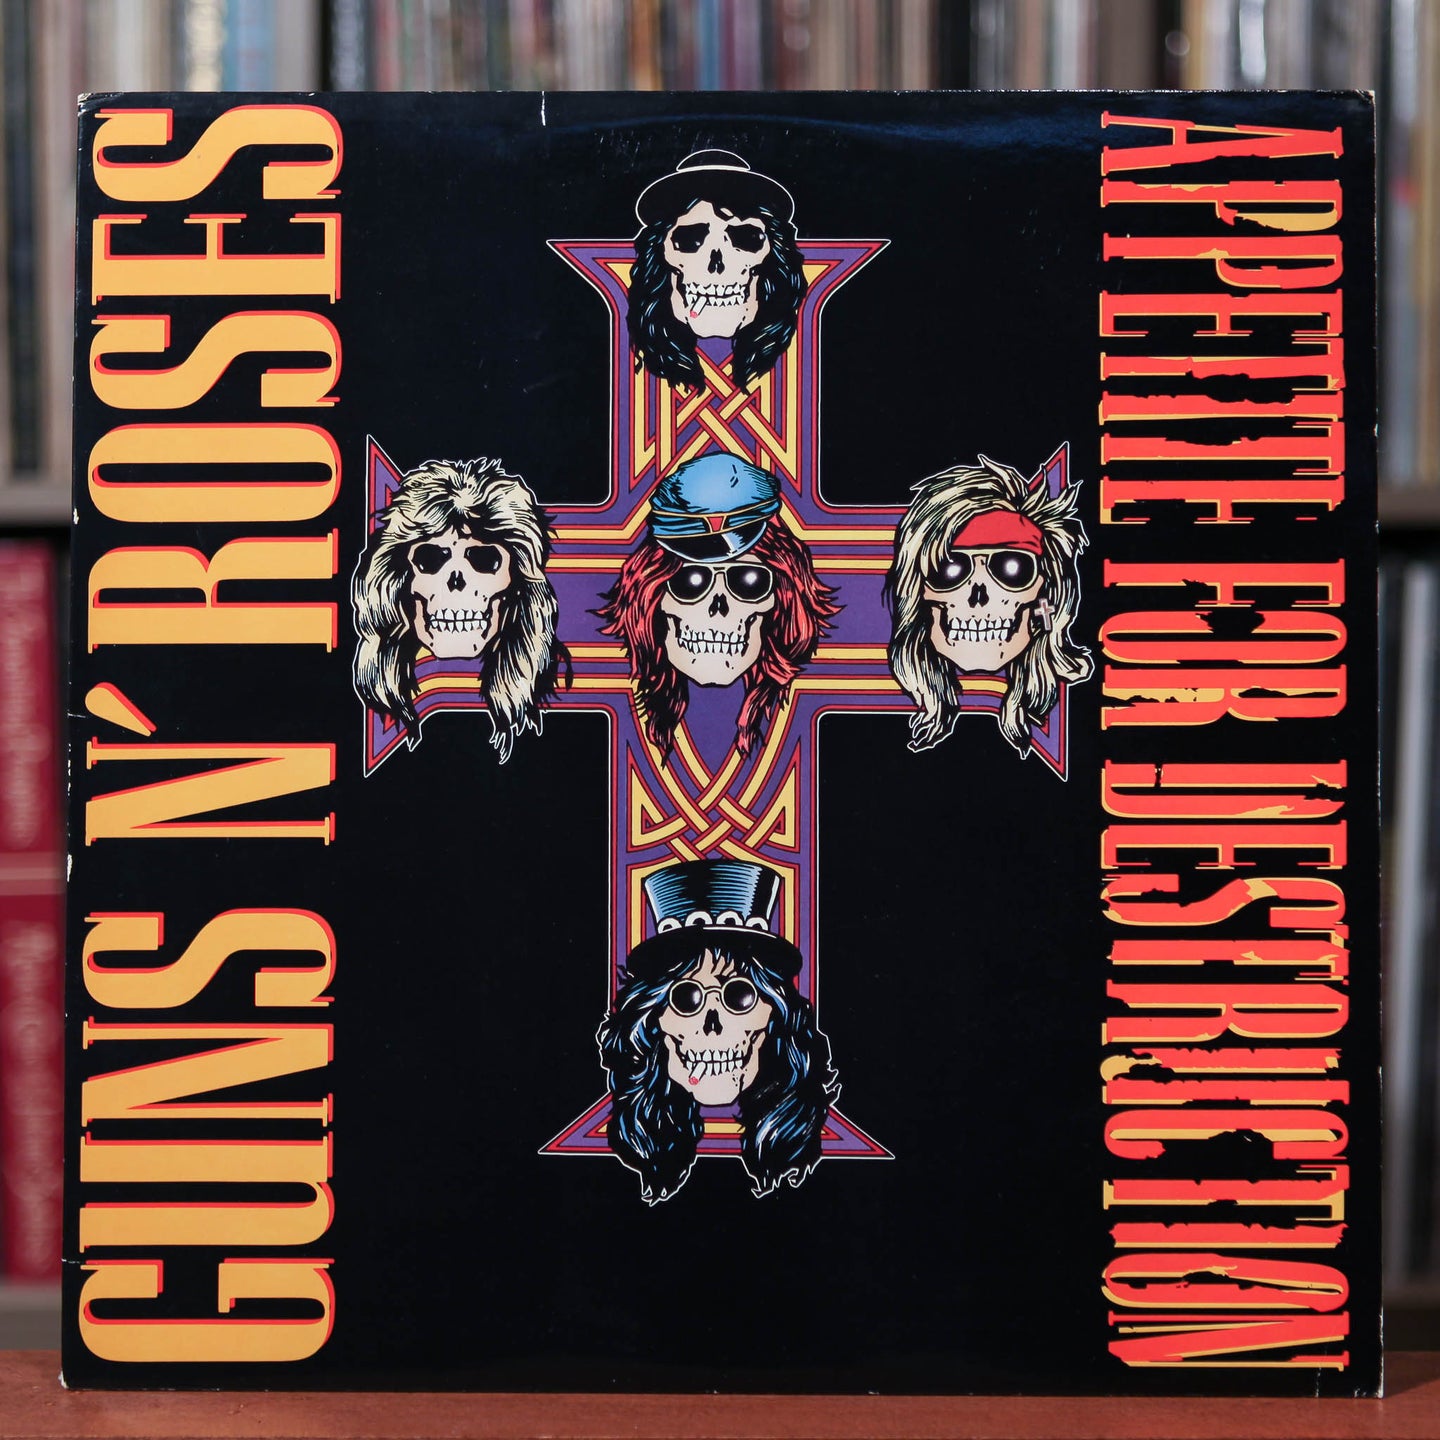 Guns N' Roses - Appetite For Destruction - 1988 Geffen, VG+/VG+